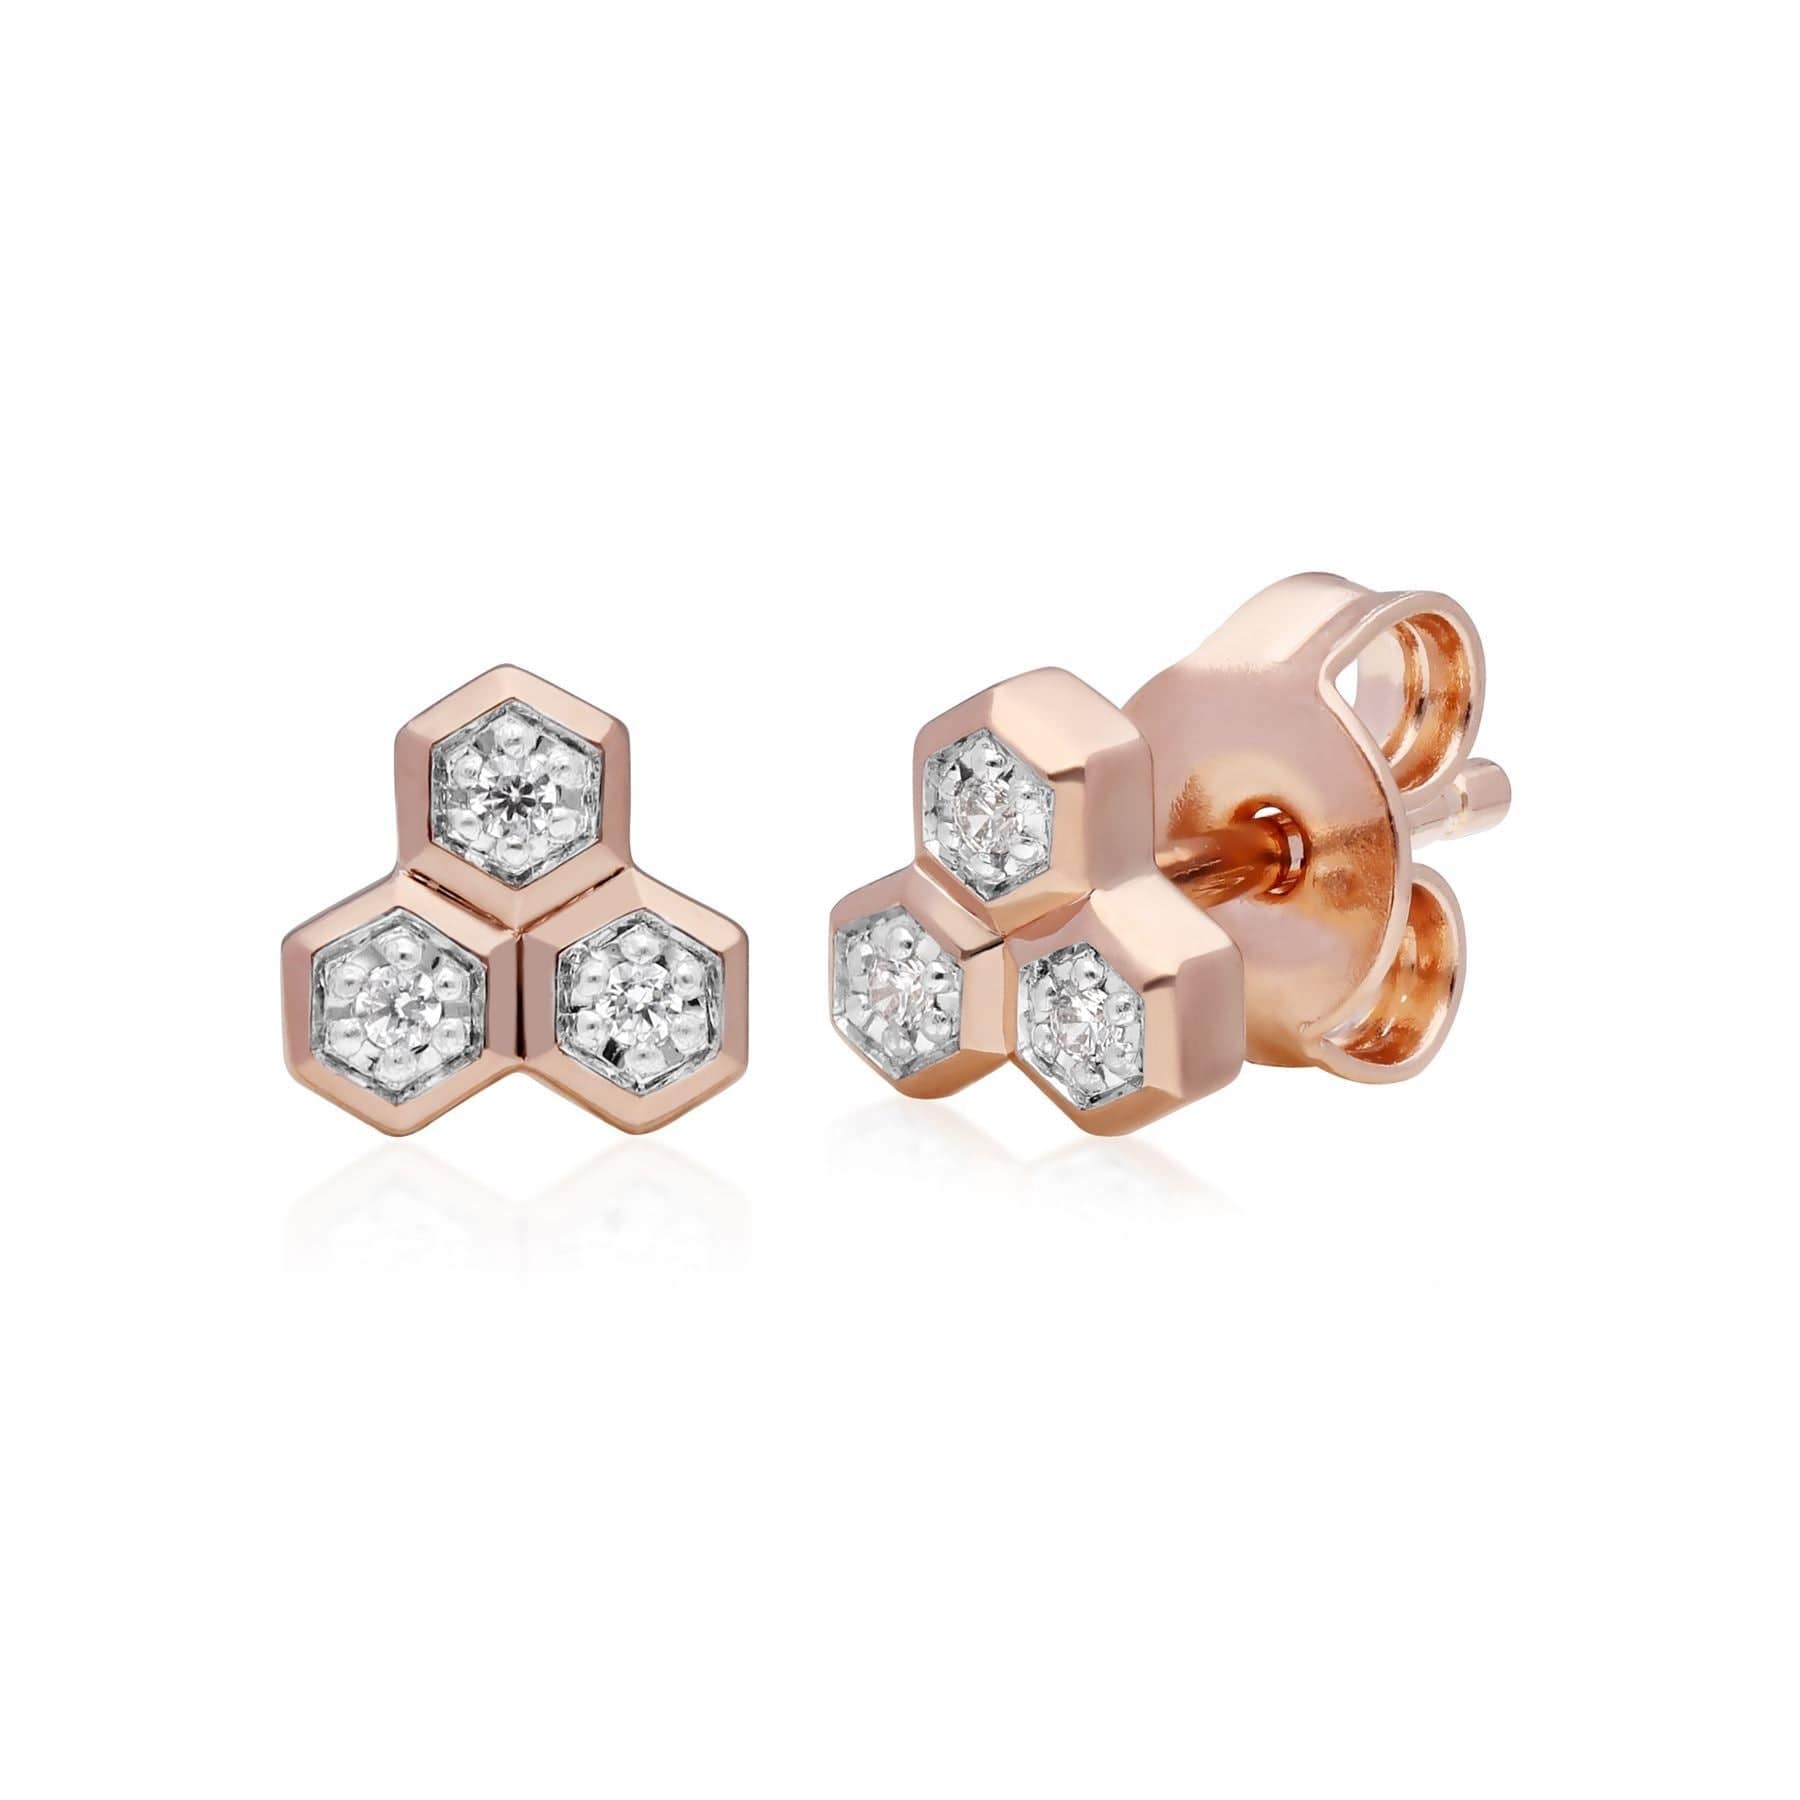 Diamond Trilogy Ring & Stud Earring Set in 9ct Rose Gold - Gemondo